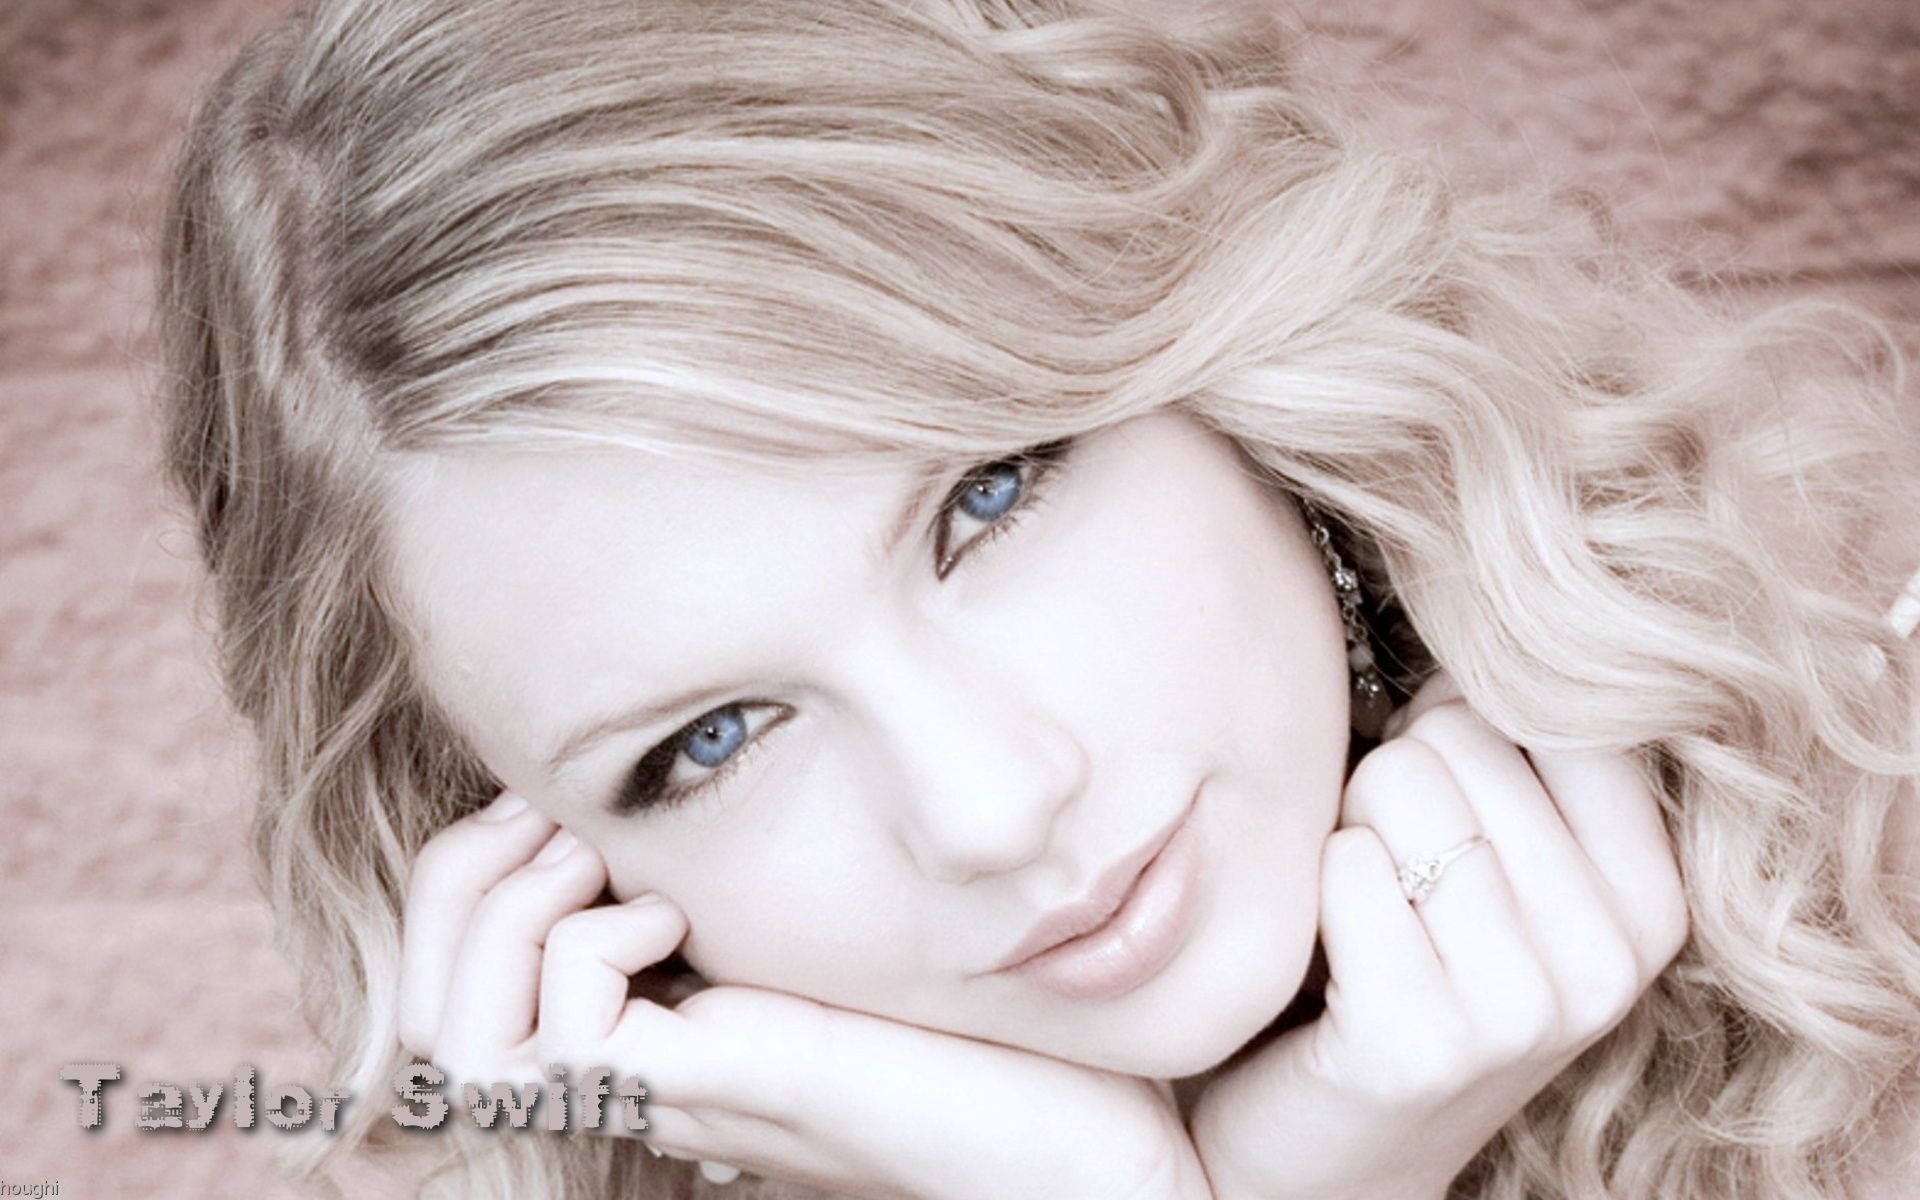 Taylor Swift beau fond d'écran #3 - 1920x1200